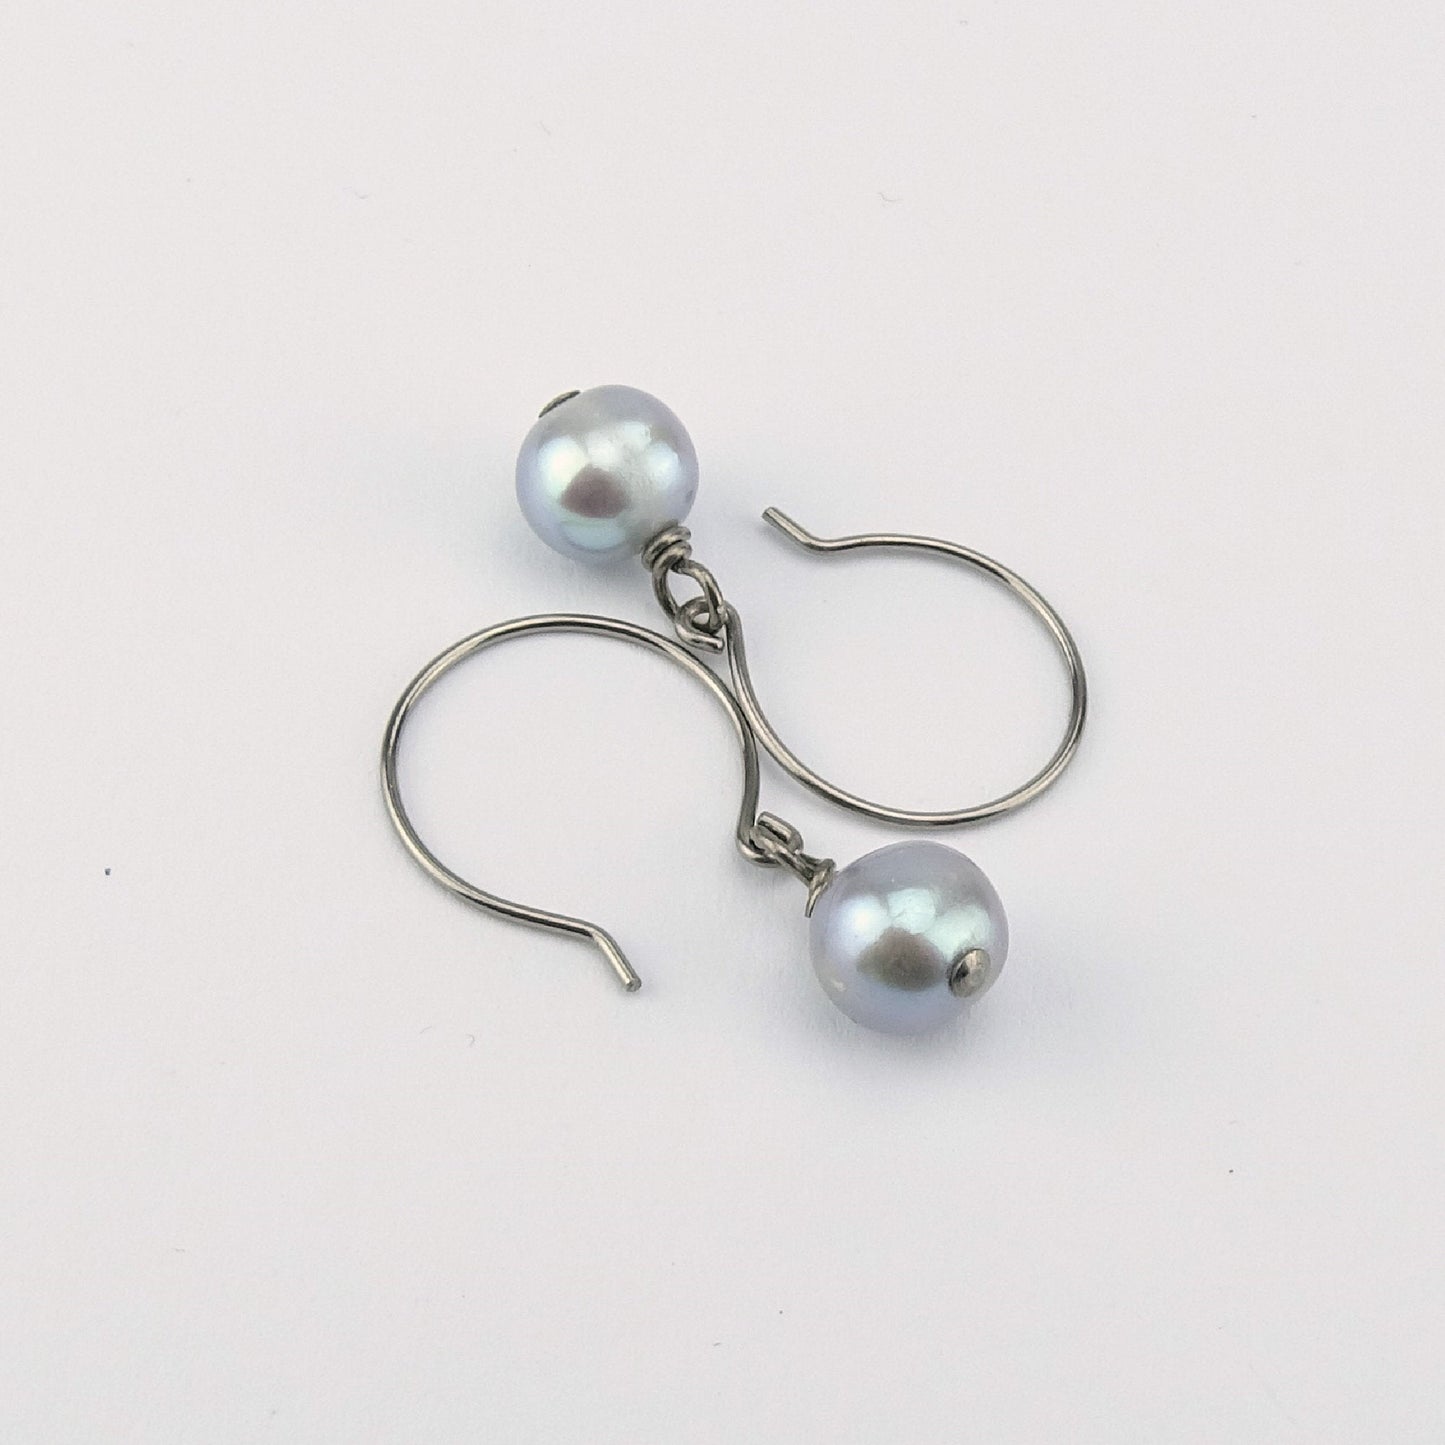 Gray Pearl Earrings, Niobium Earrings, Grey Freshwater Pearls Titanium Earrings, Hypoallergenic Hoop Nickel Free Earrings for Sensitive Ears